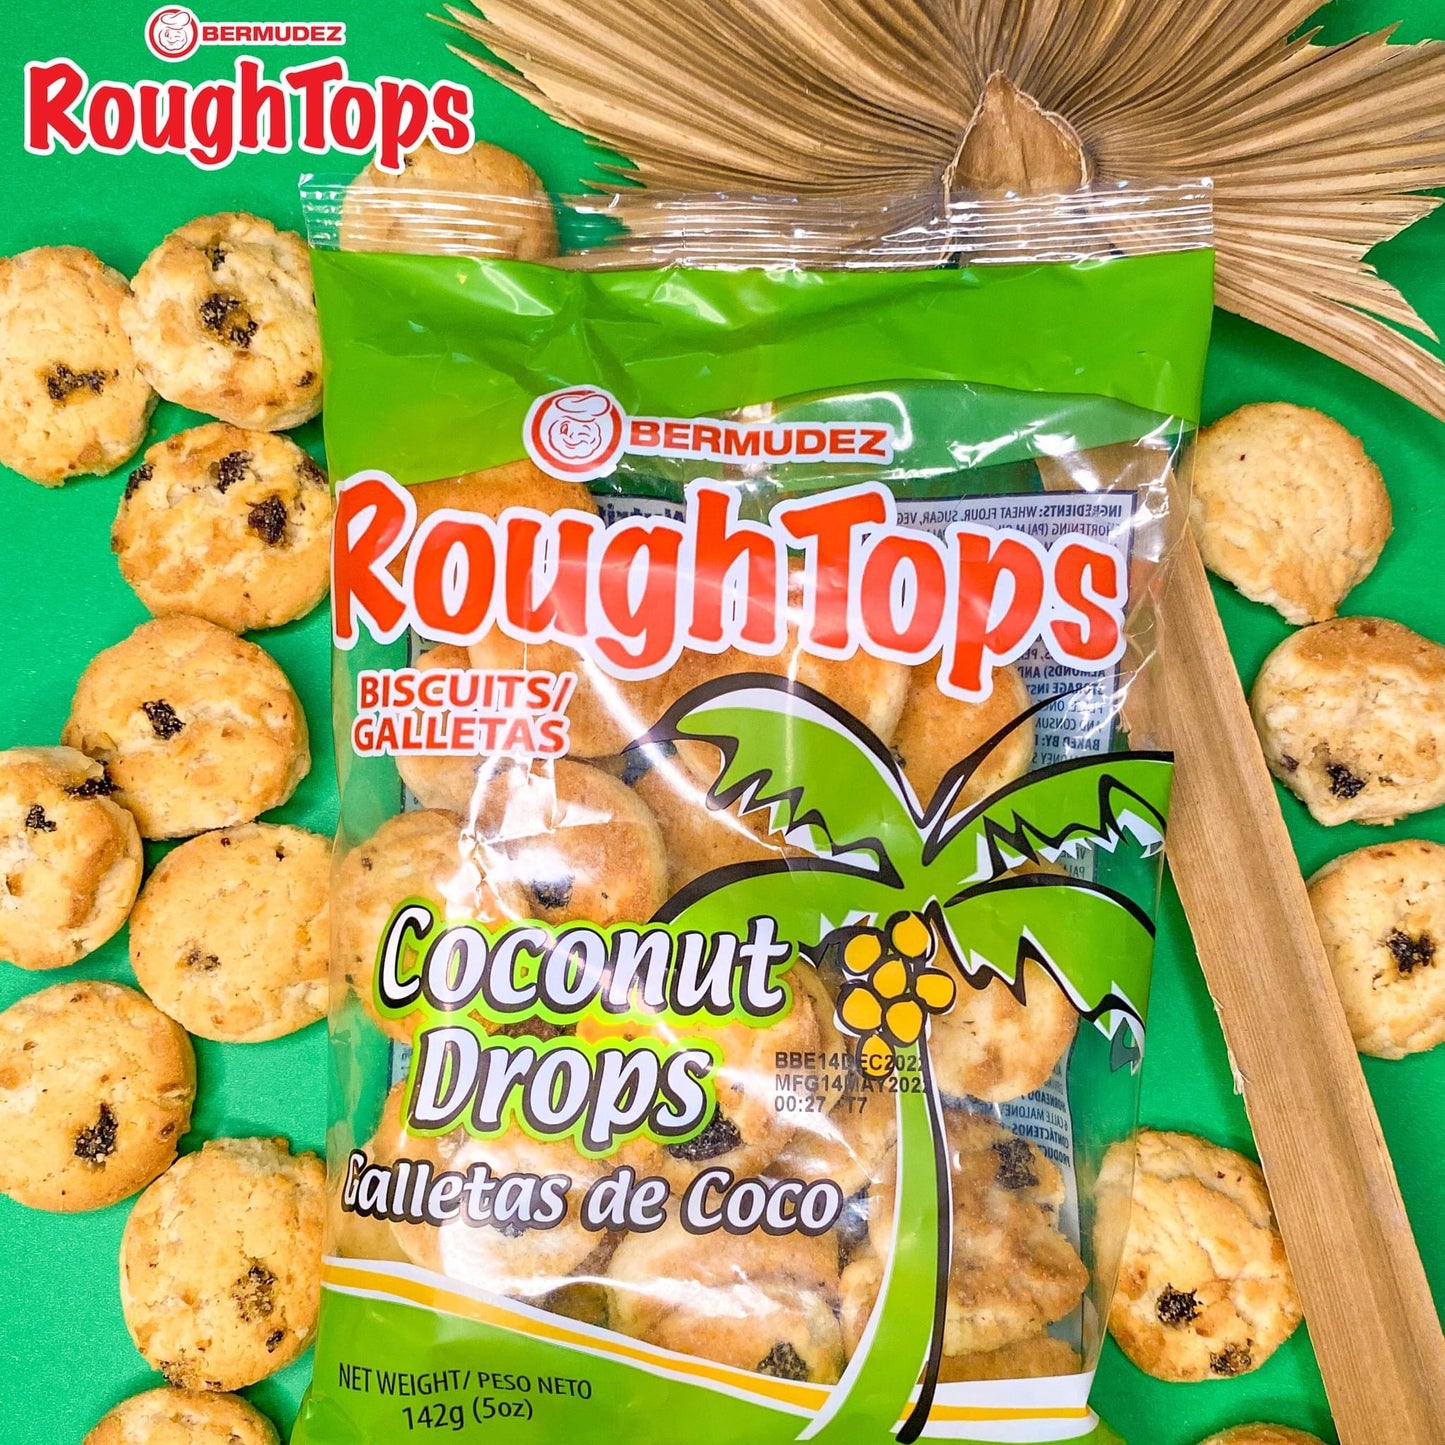 Coconut drops -rough tops